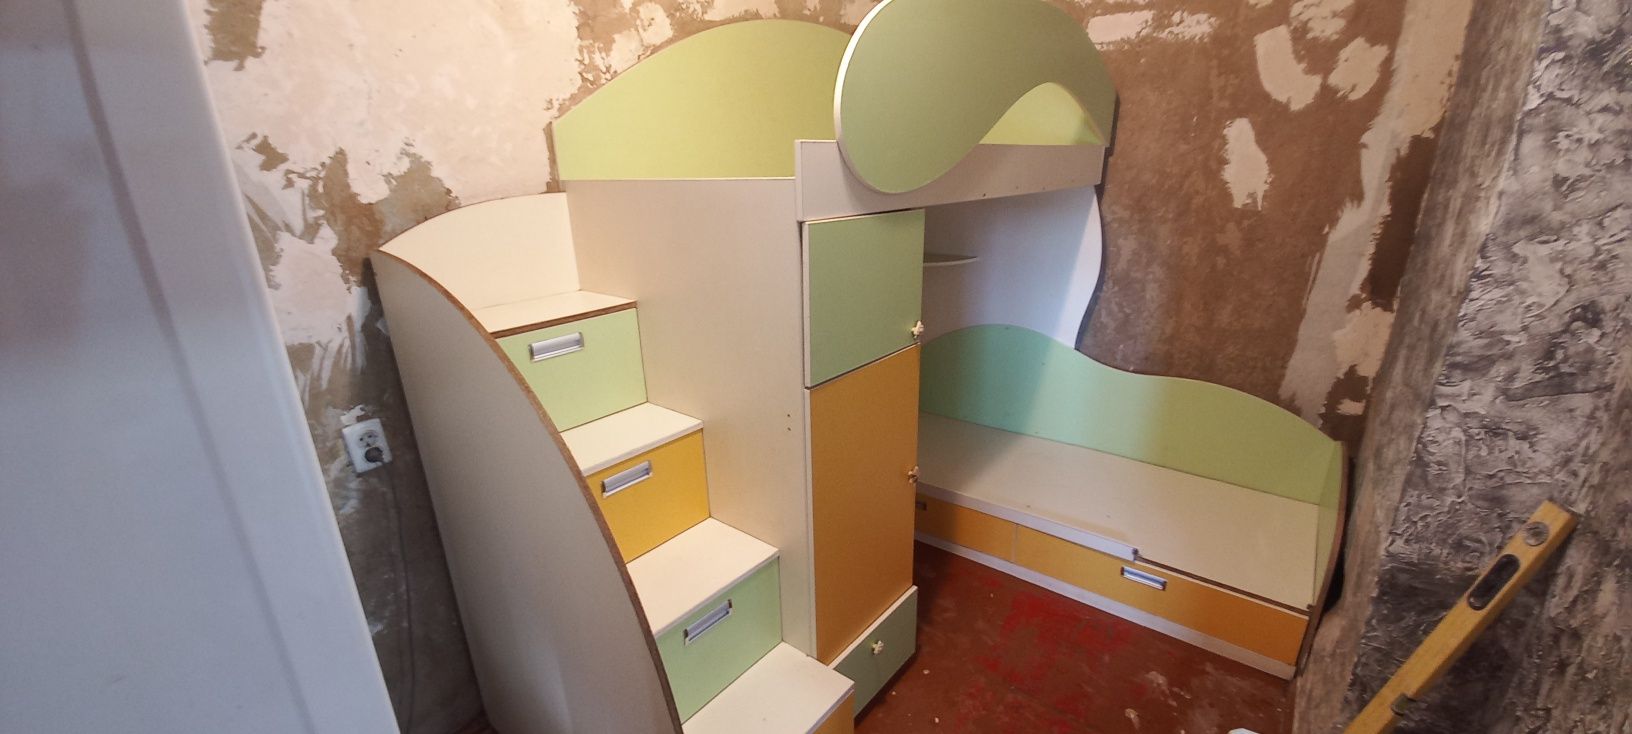 Детская двухетажная кровать со встроенными шкафами